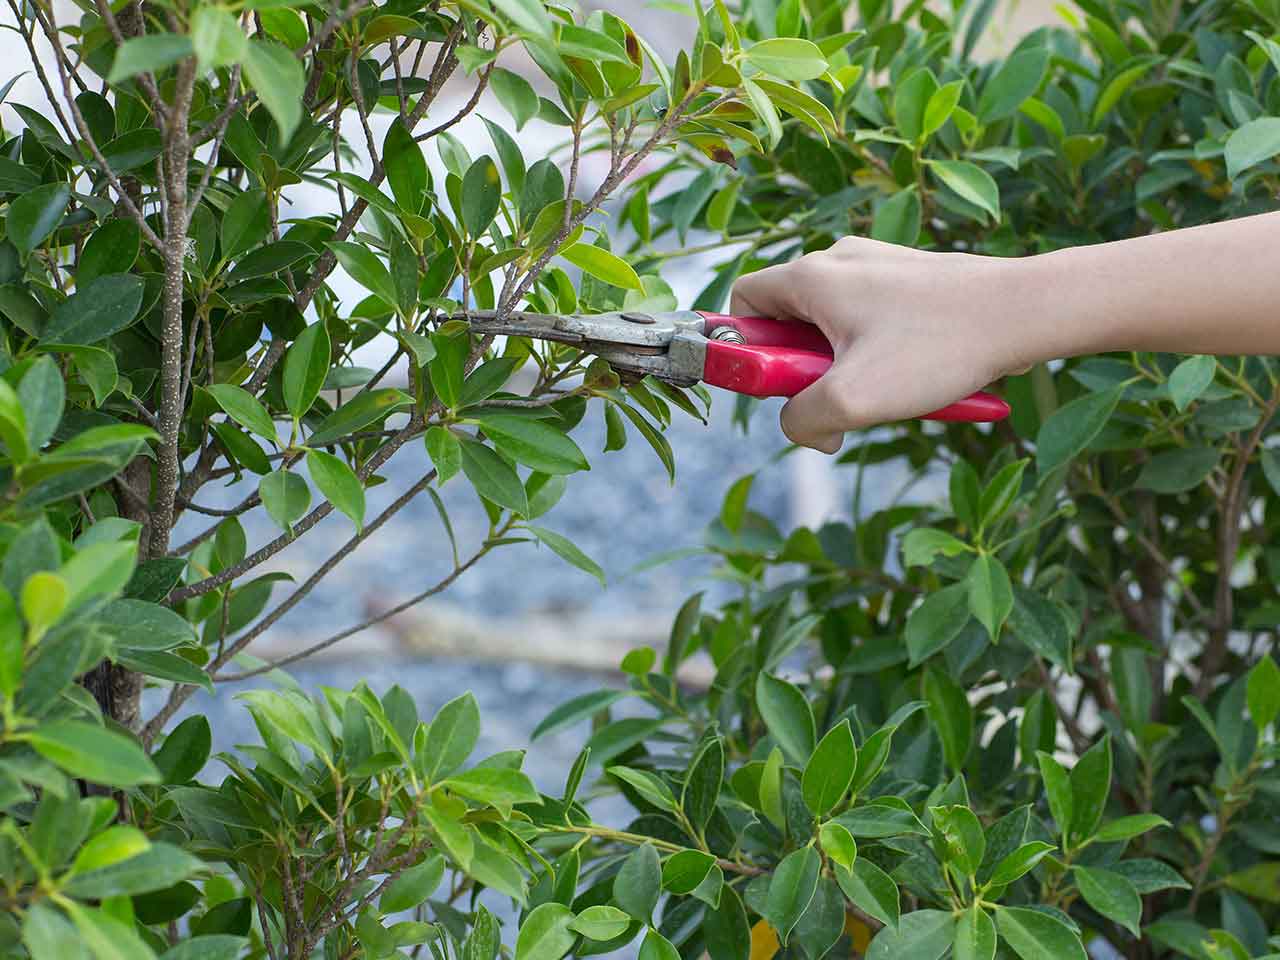 Gardener pruning with secateurs